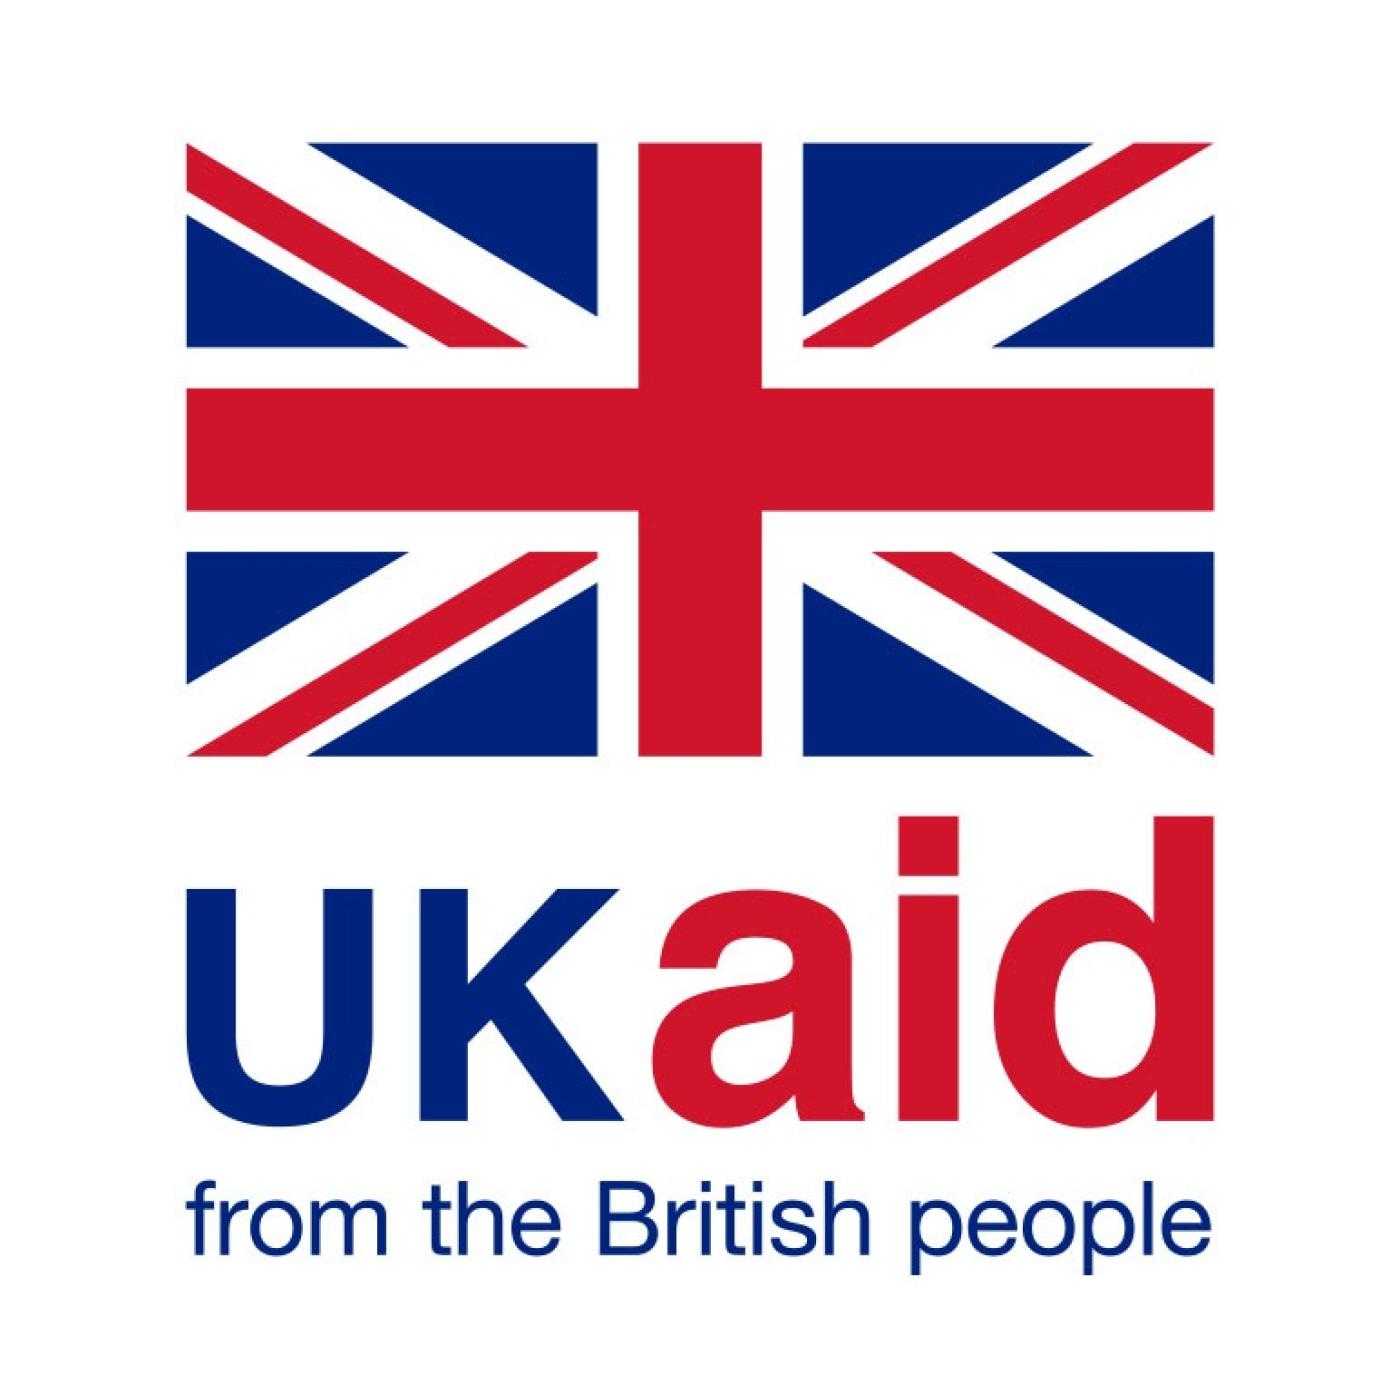 UKAID logo